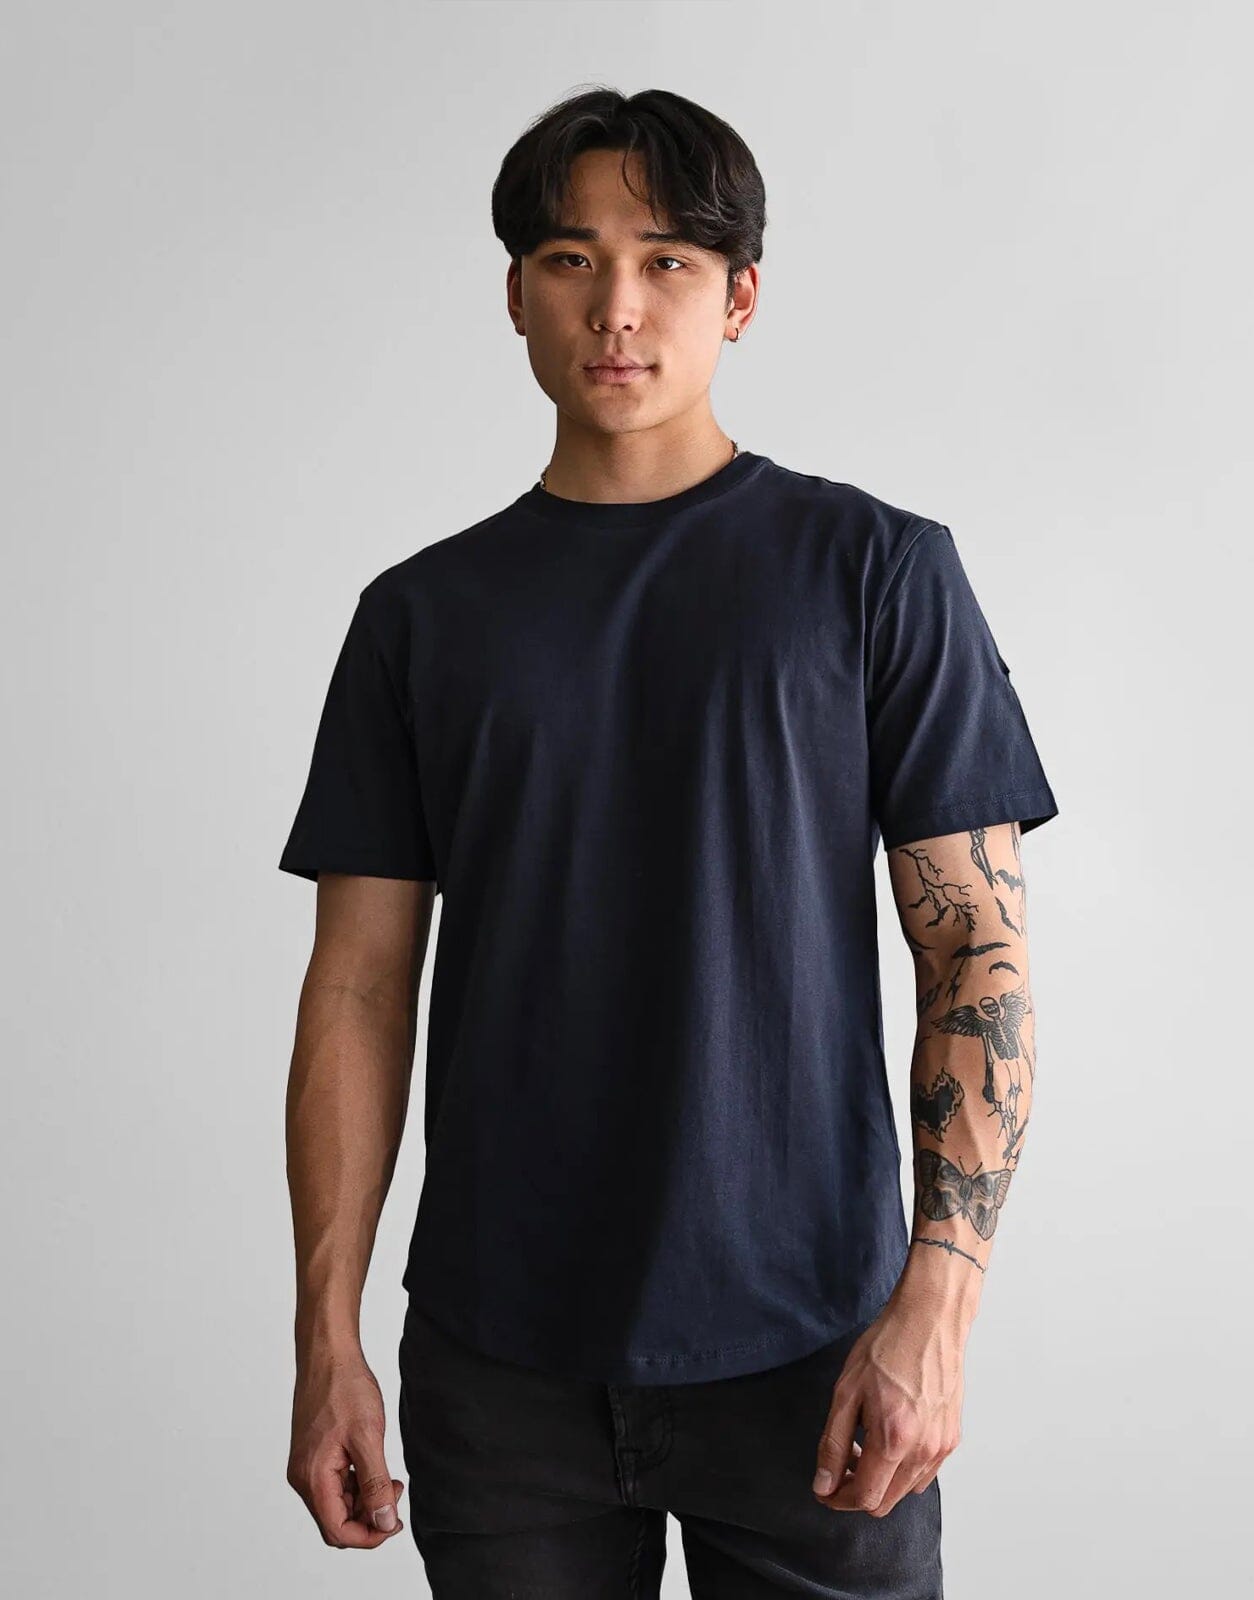 Fade Still Navy T-Shirt - Subwear